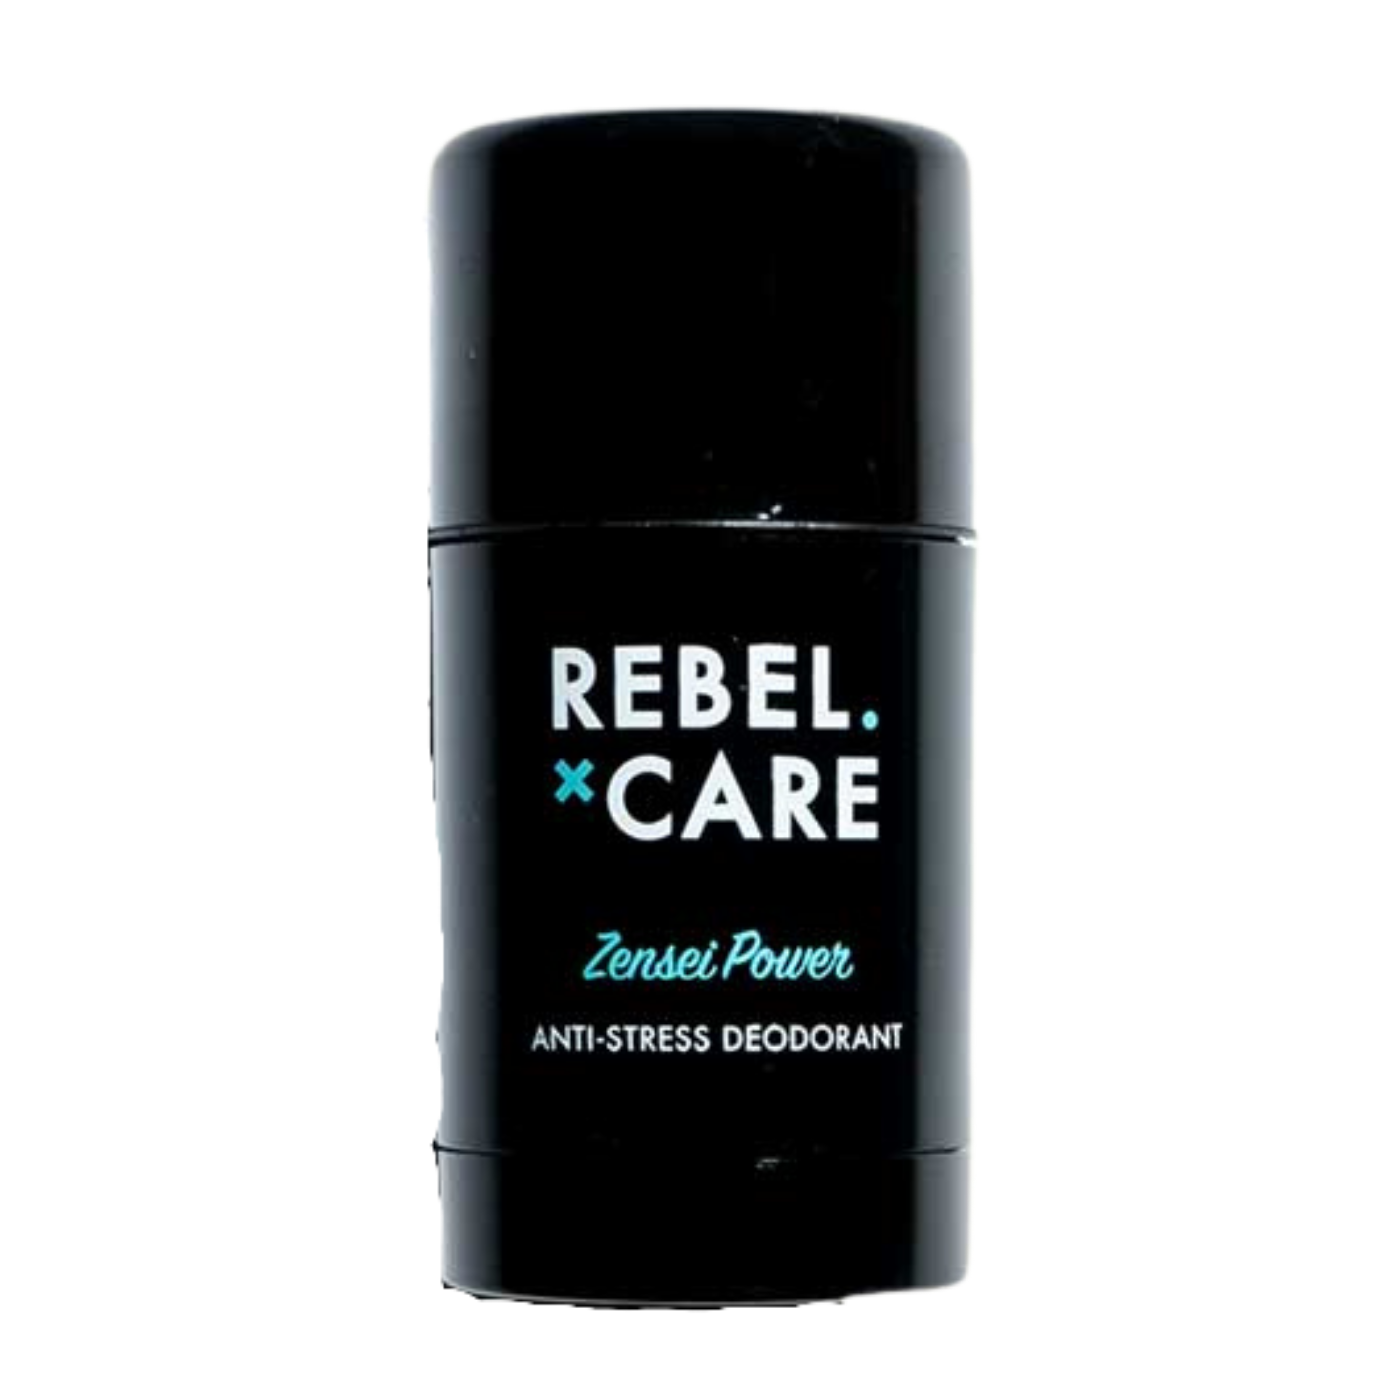 Rebel Care Deodorant Zensei Power vegan Naturkosmetik Männerpflege